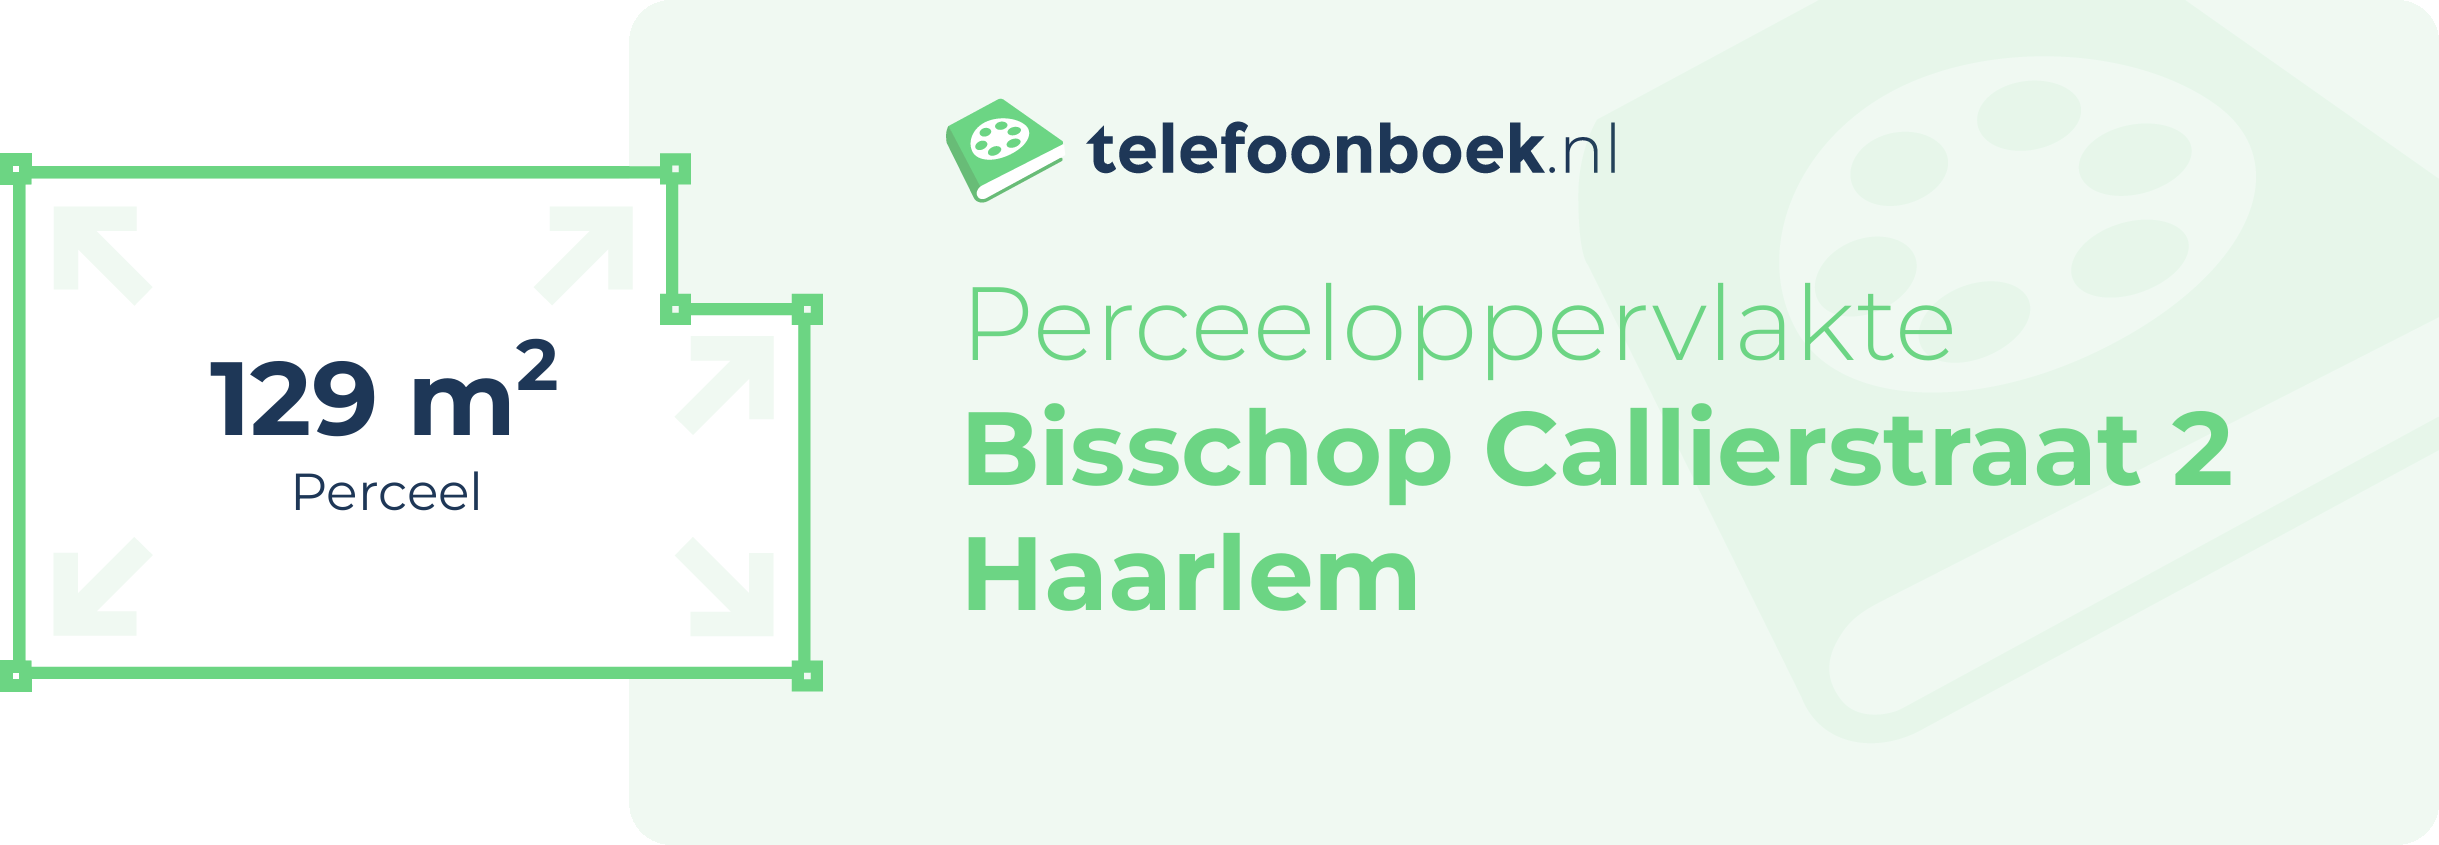 Perceeloppervlakte Bisschop Callierstraat 2 Haarlem